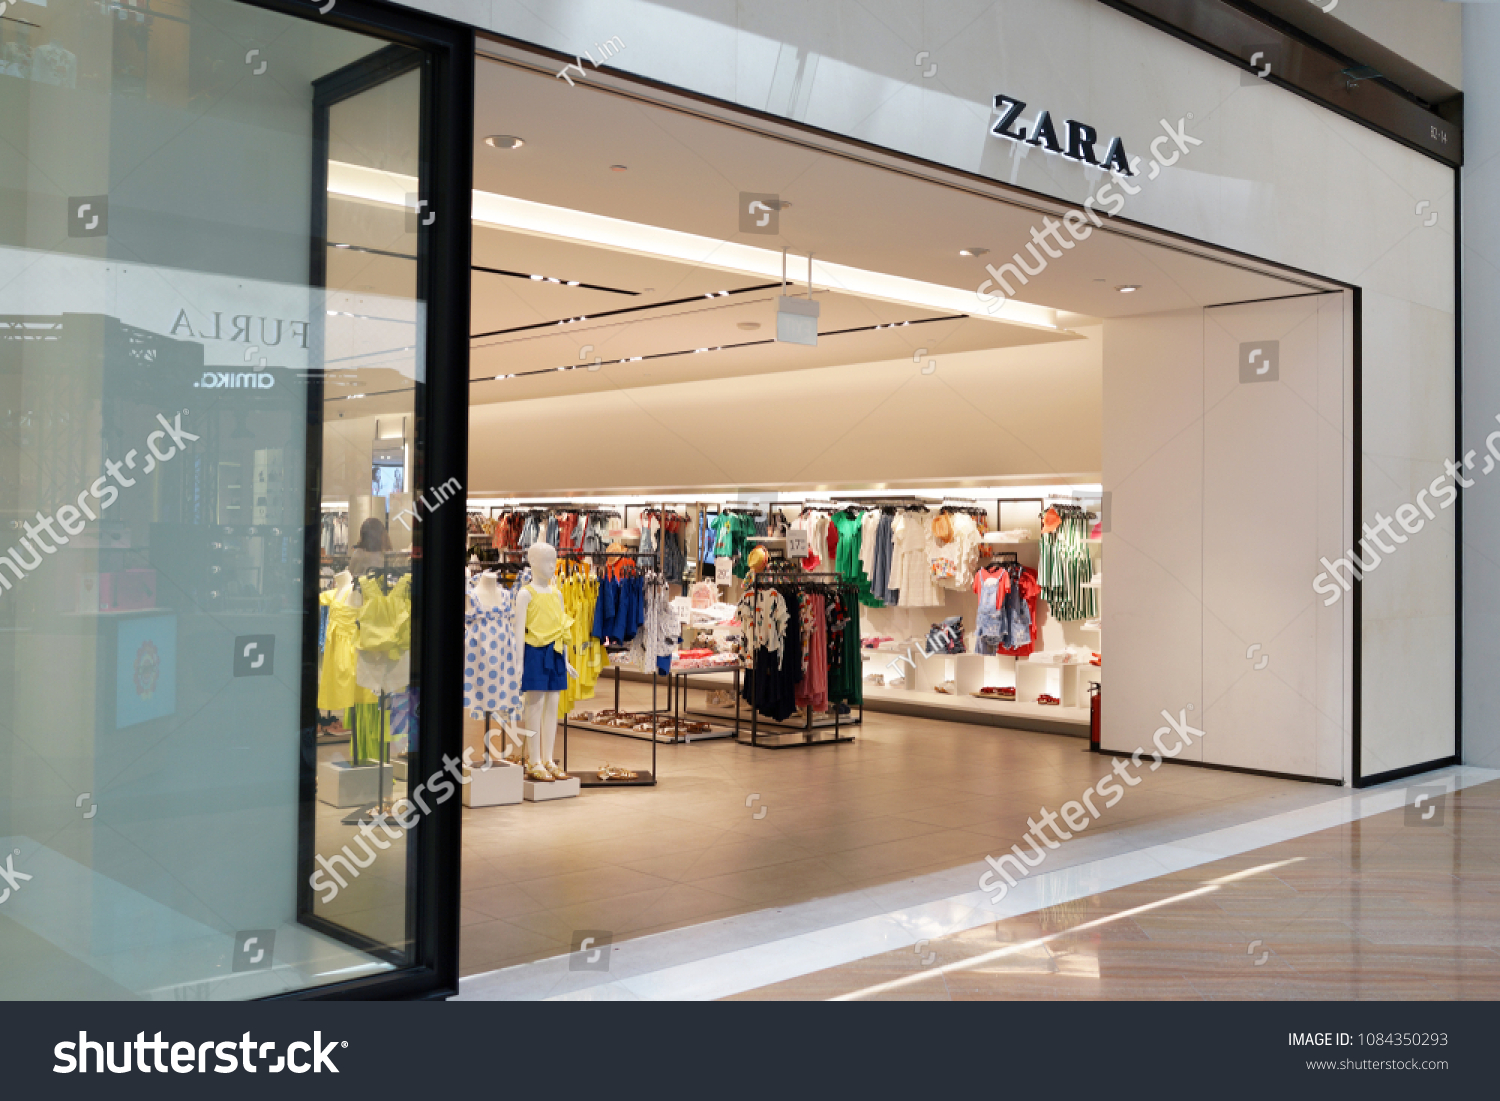 Singapore Apr 22 2018 Zara Kids Stock 